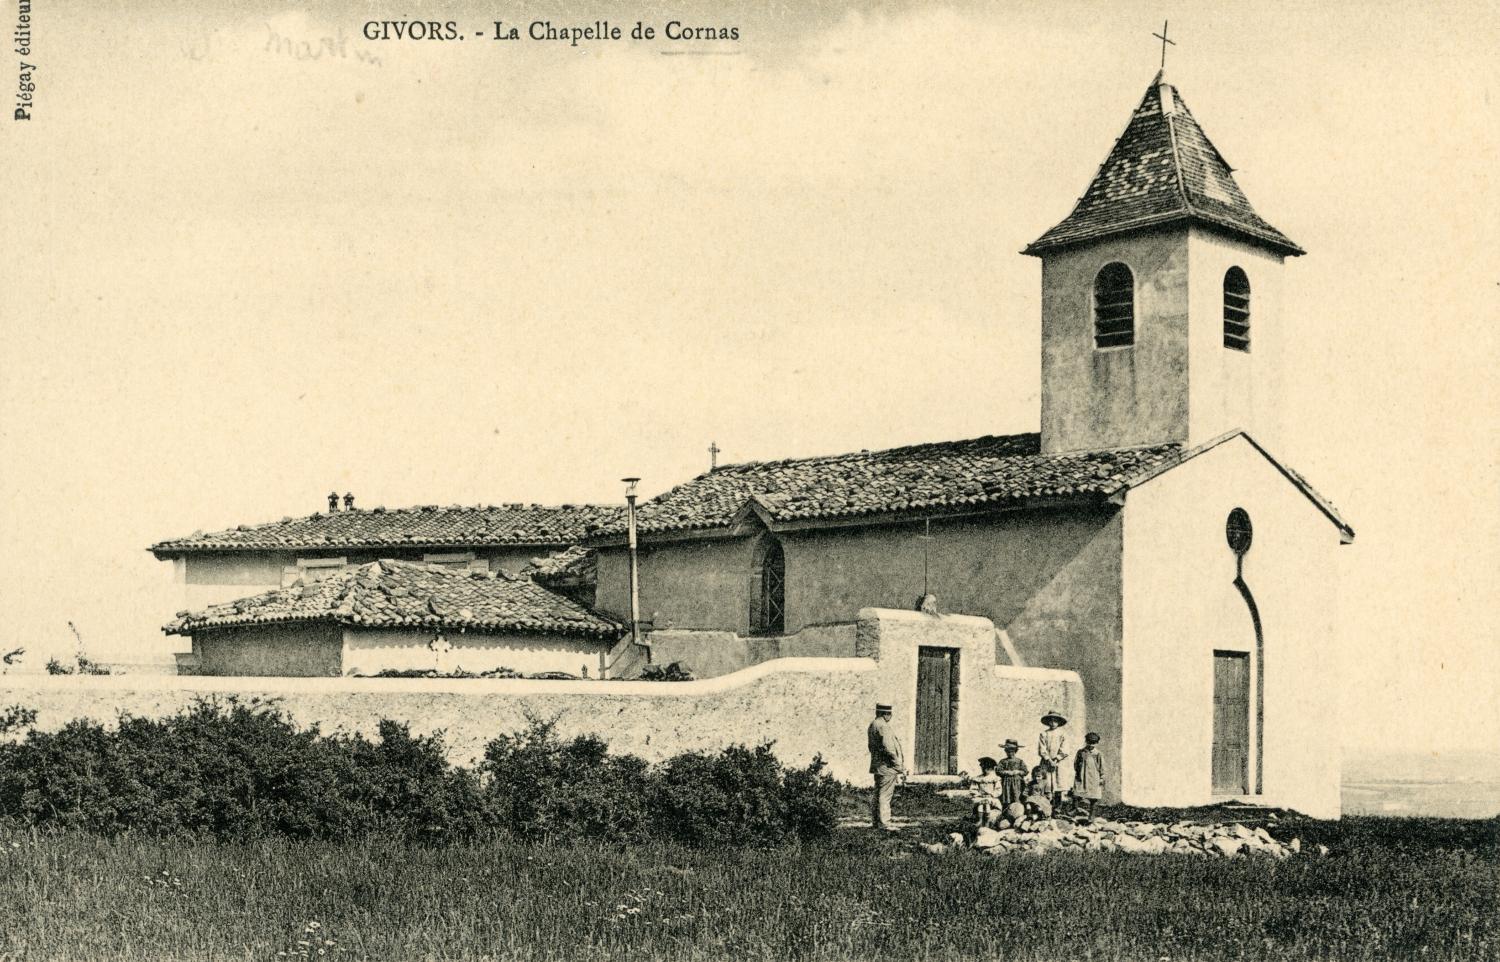 Givors (Rhône). - La Chapelle de Cornas